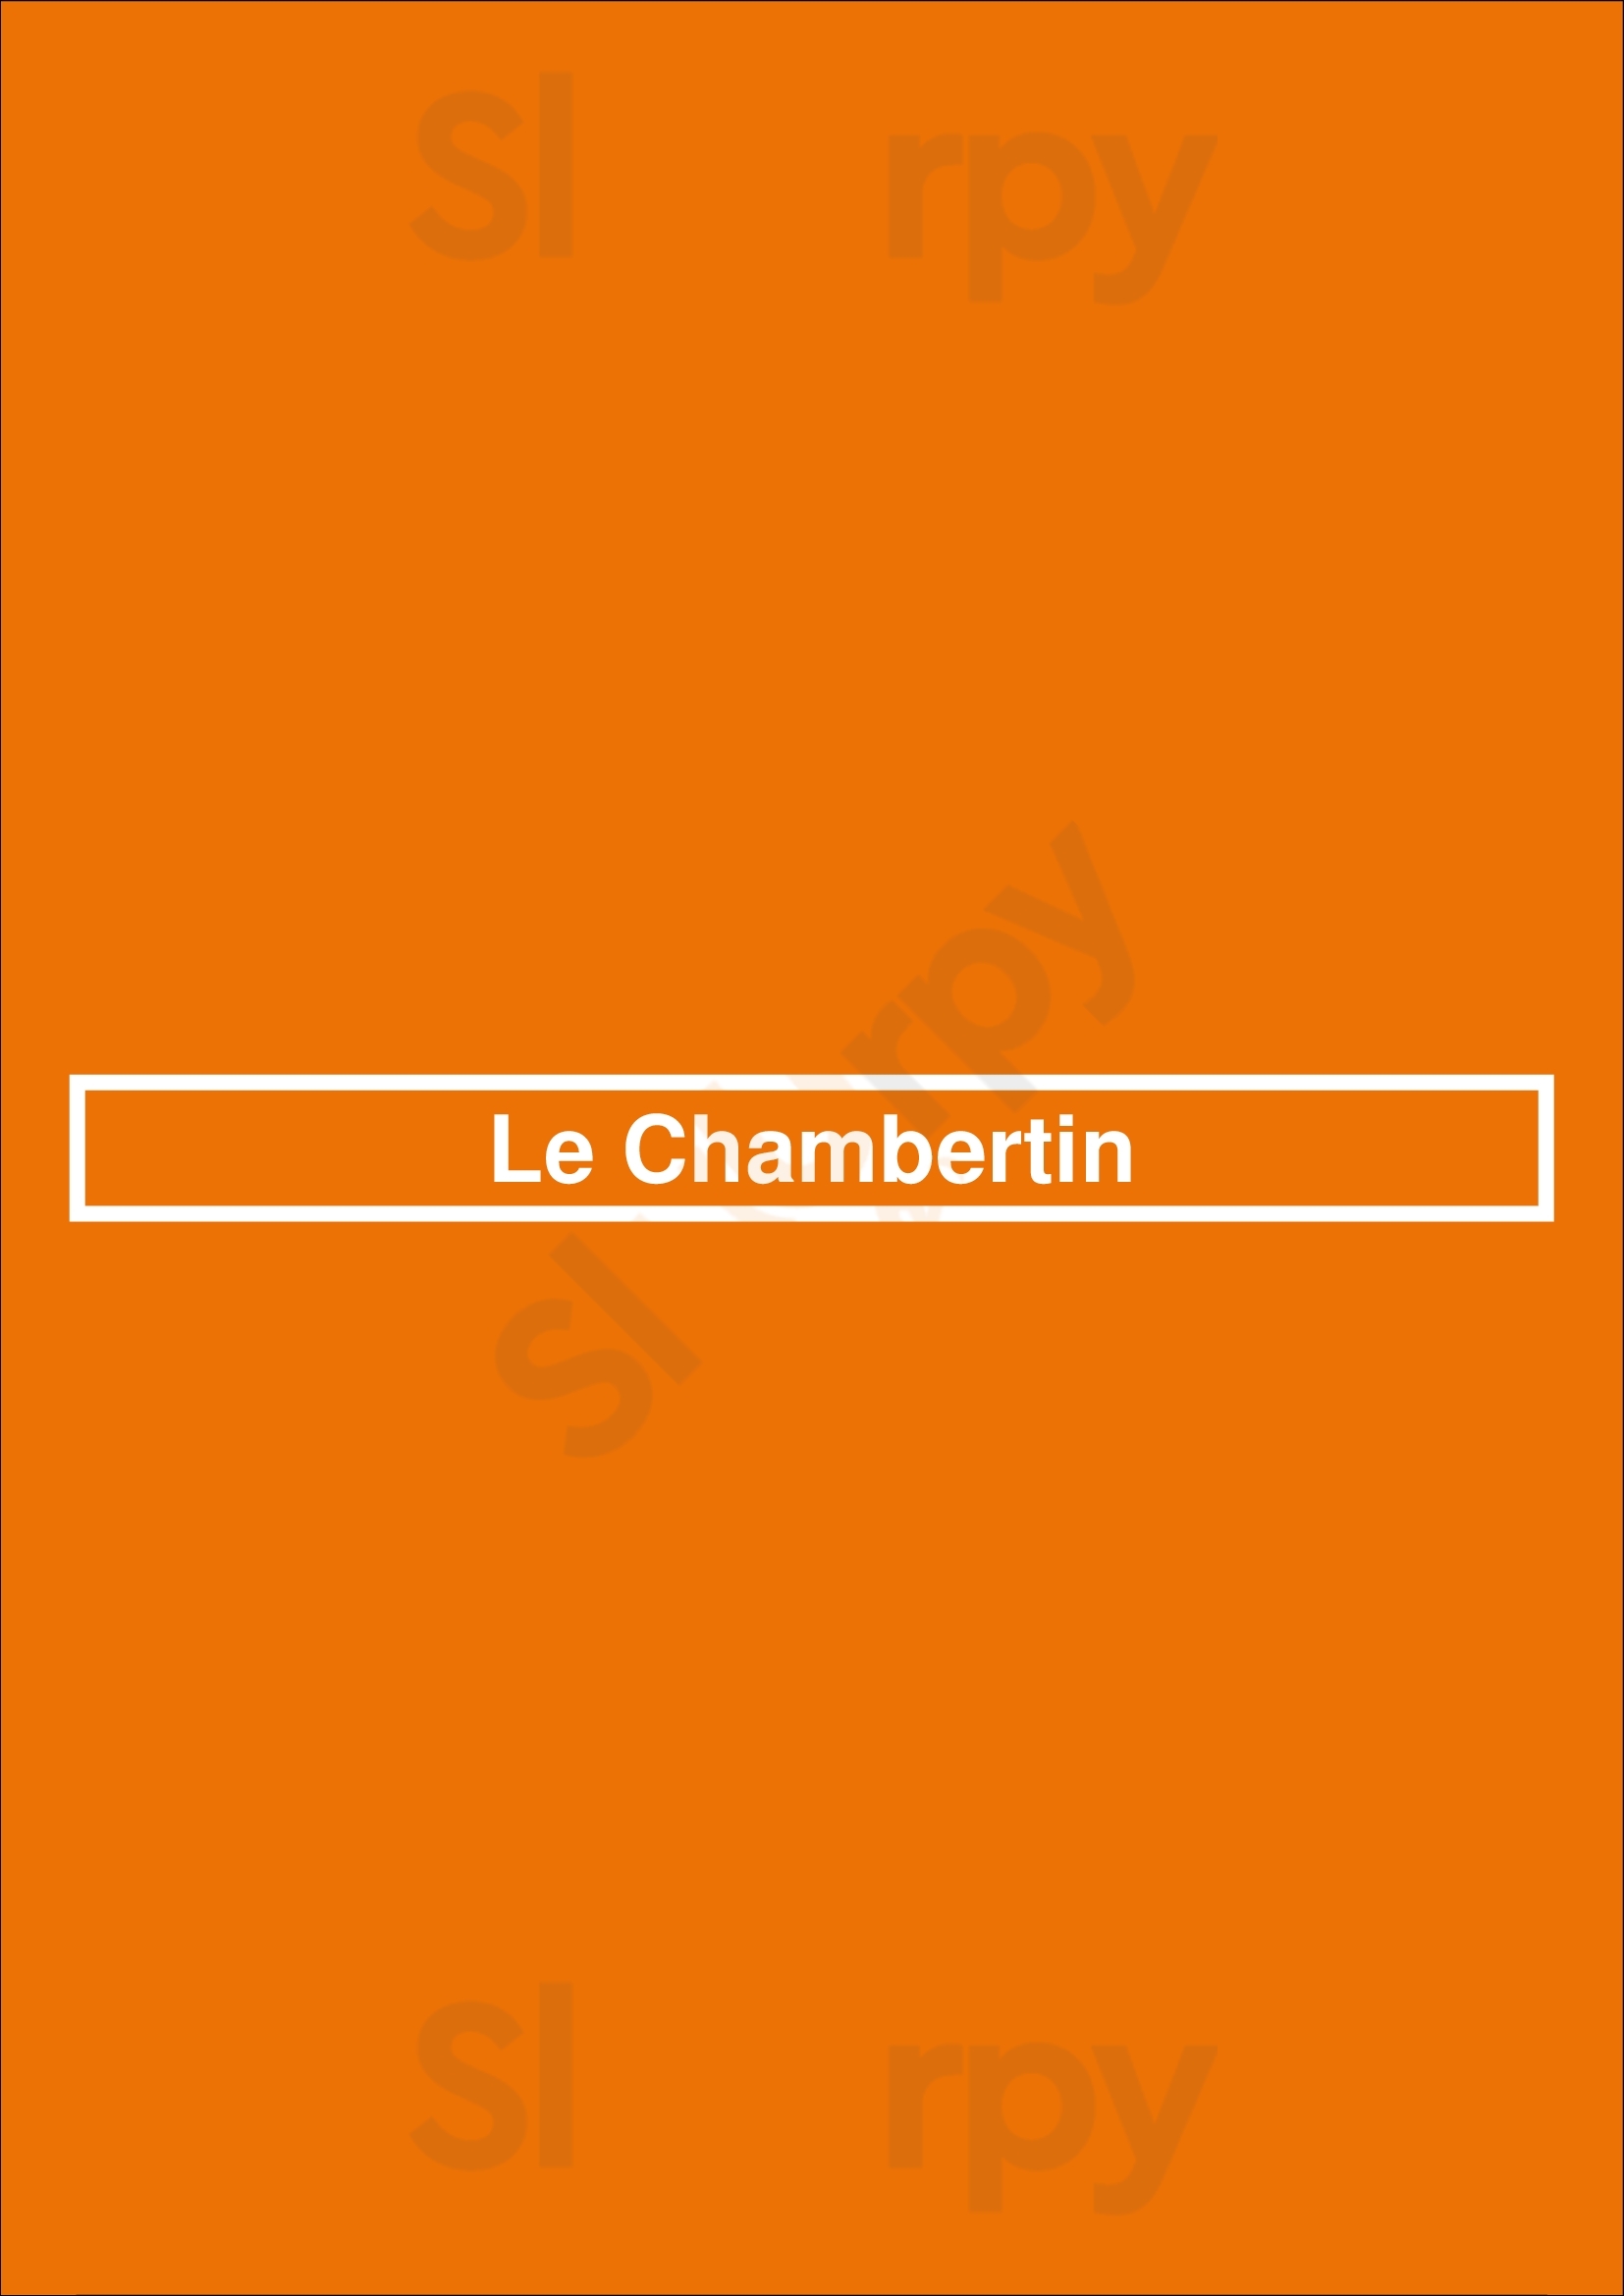 Le Chambertin Paris Menu - 1